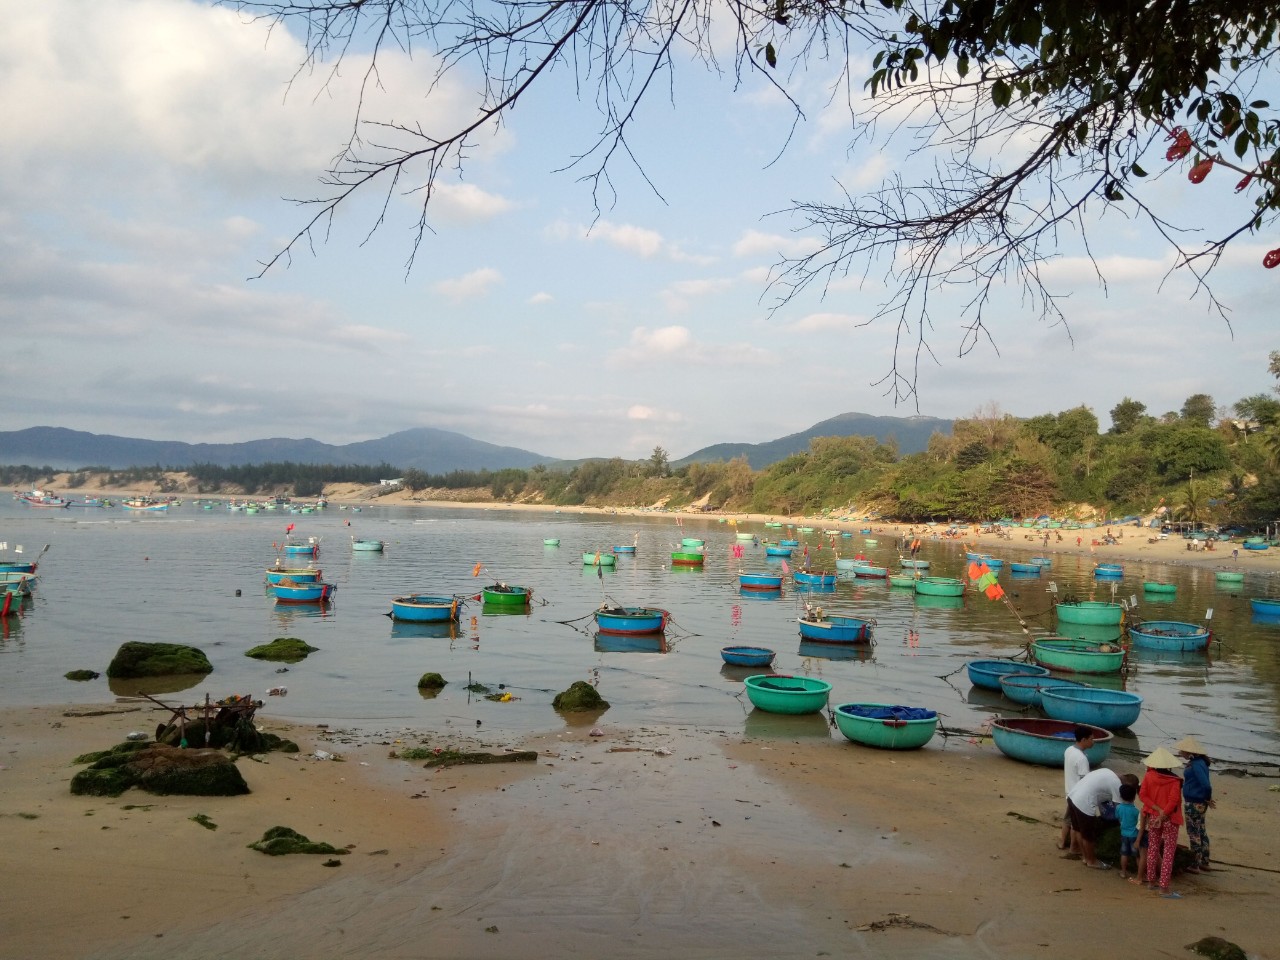 Fotografie cu Tan Phung Beach cu o suprafață de apa turcoaz